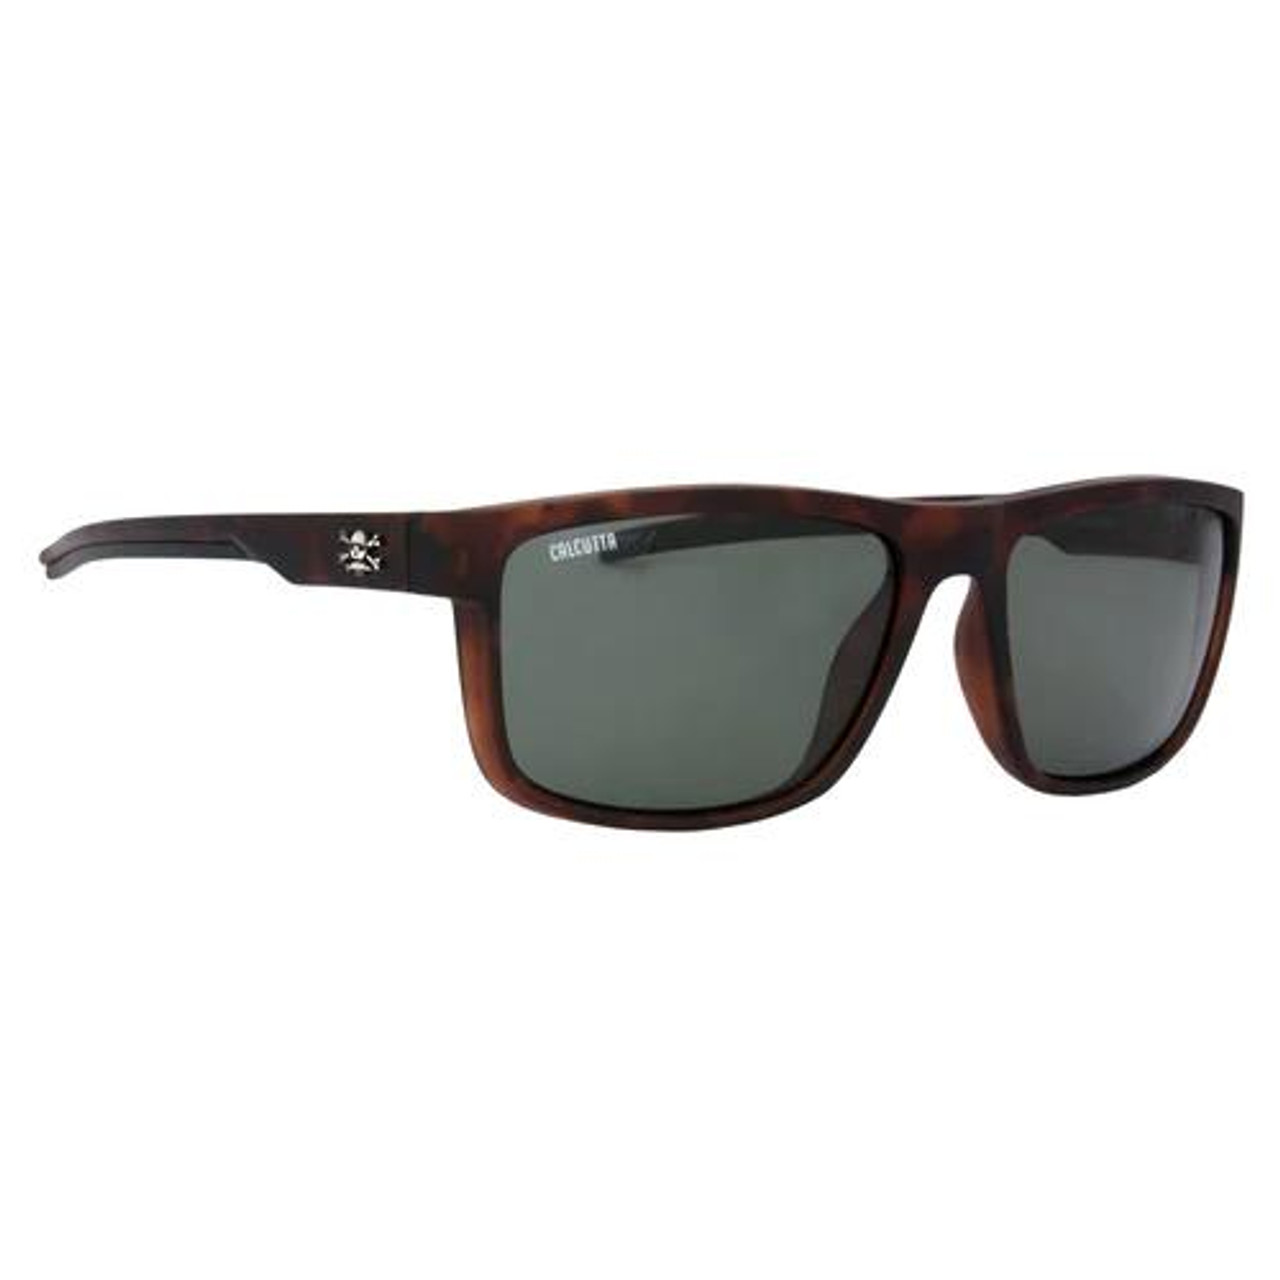 Calcutta Sunglasses - 768721397495